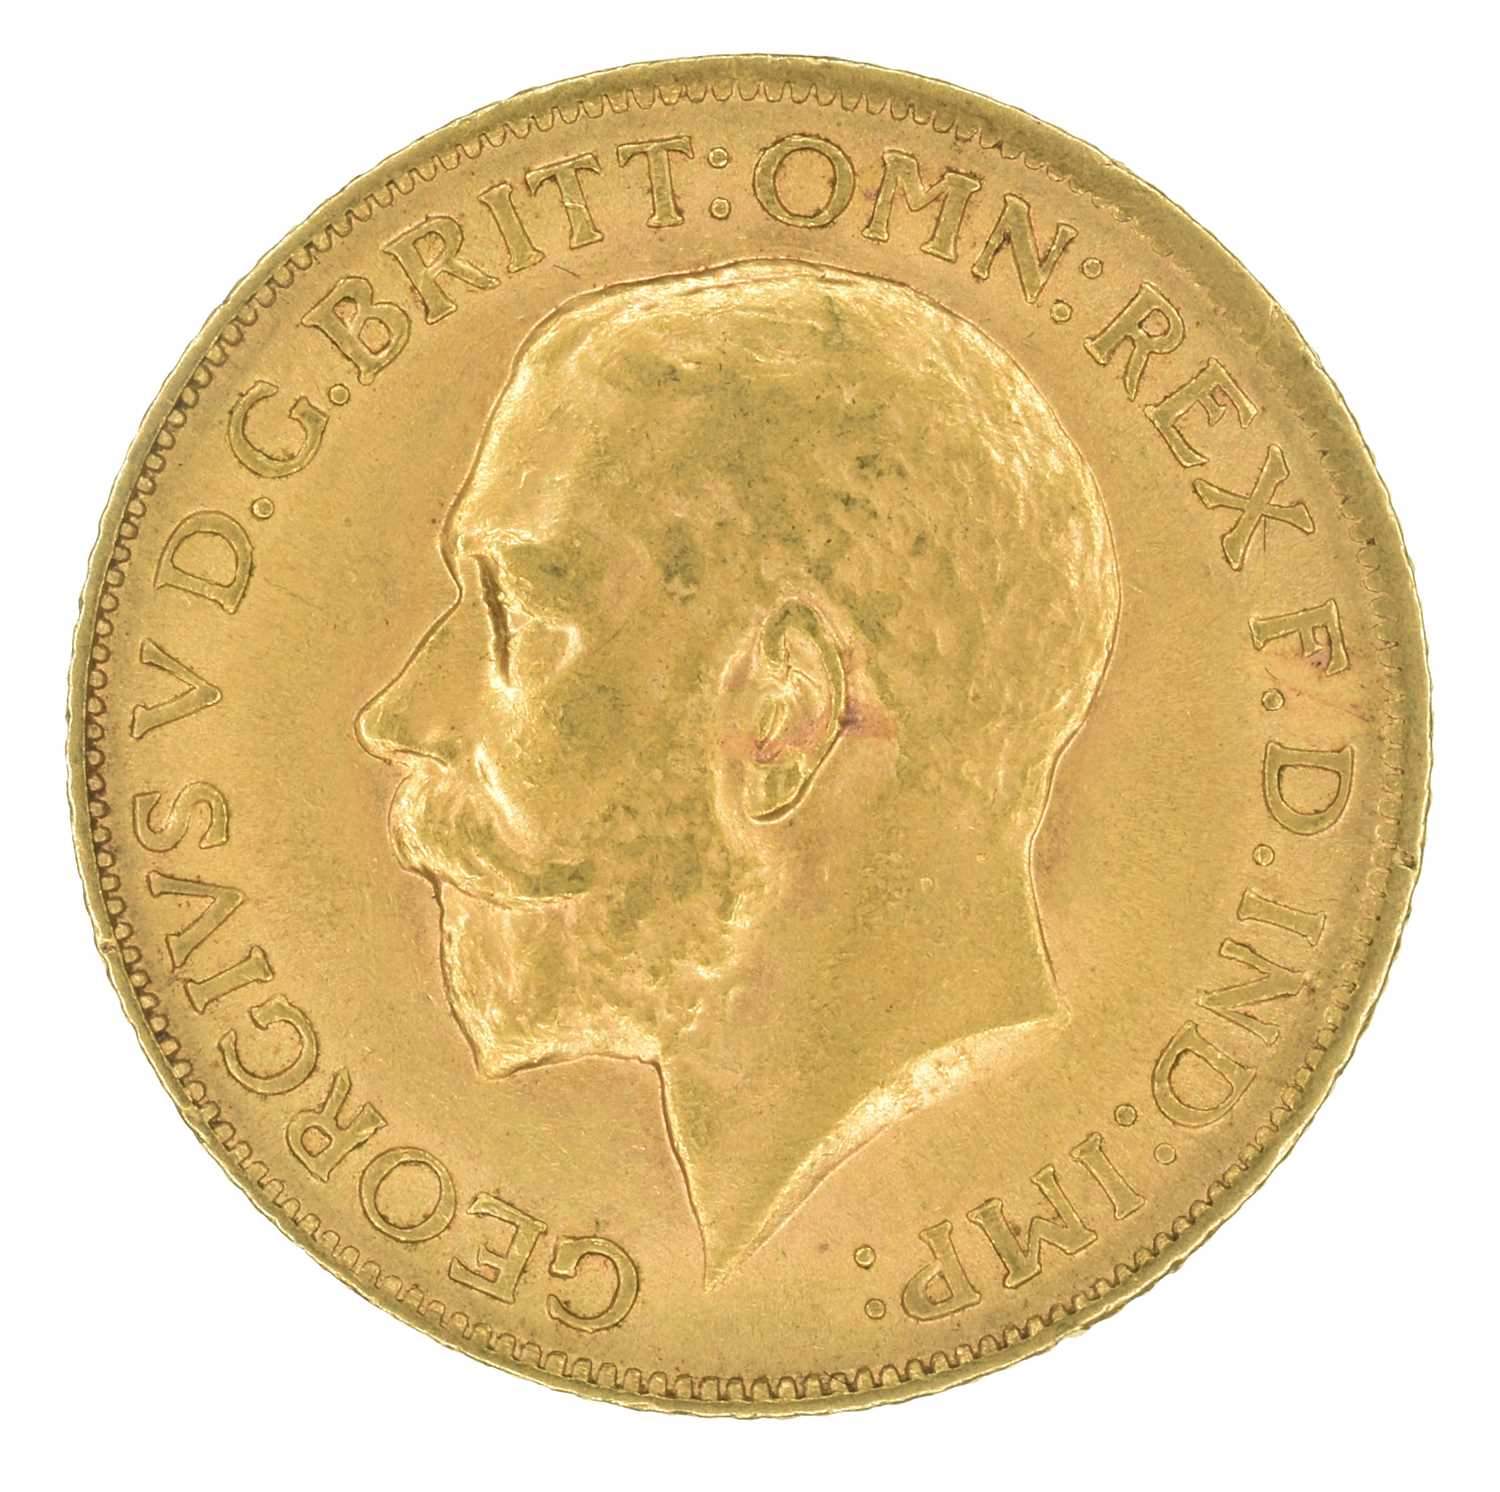 King George V, Sovereign, 1912.